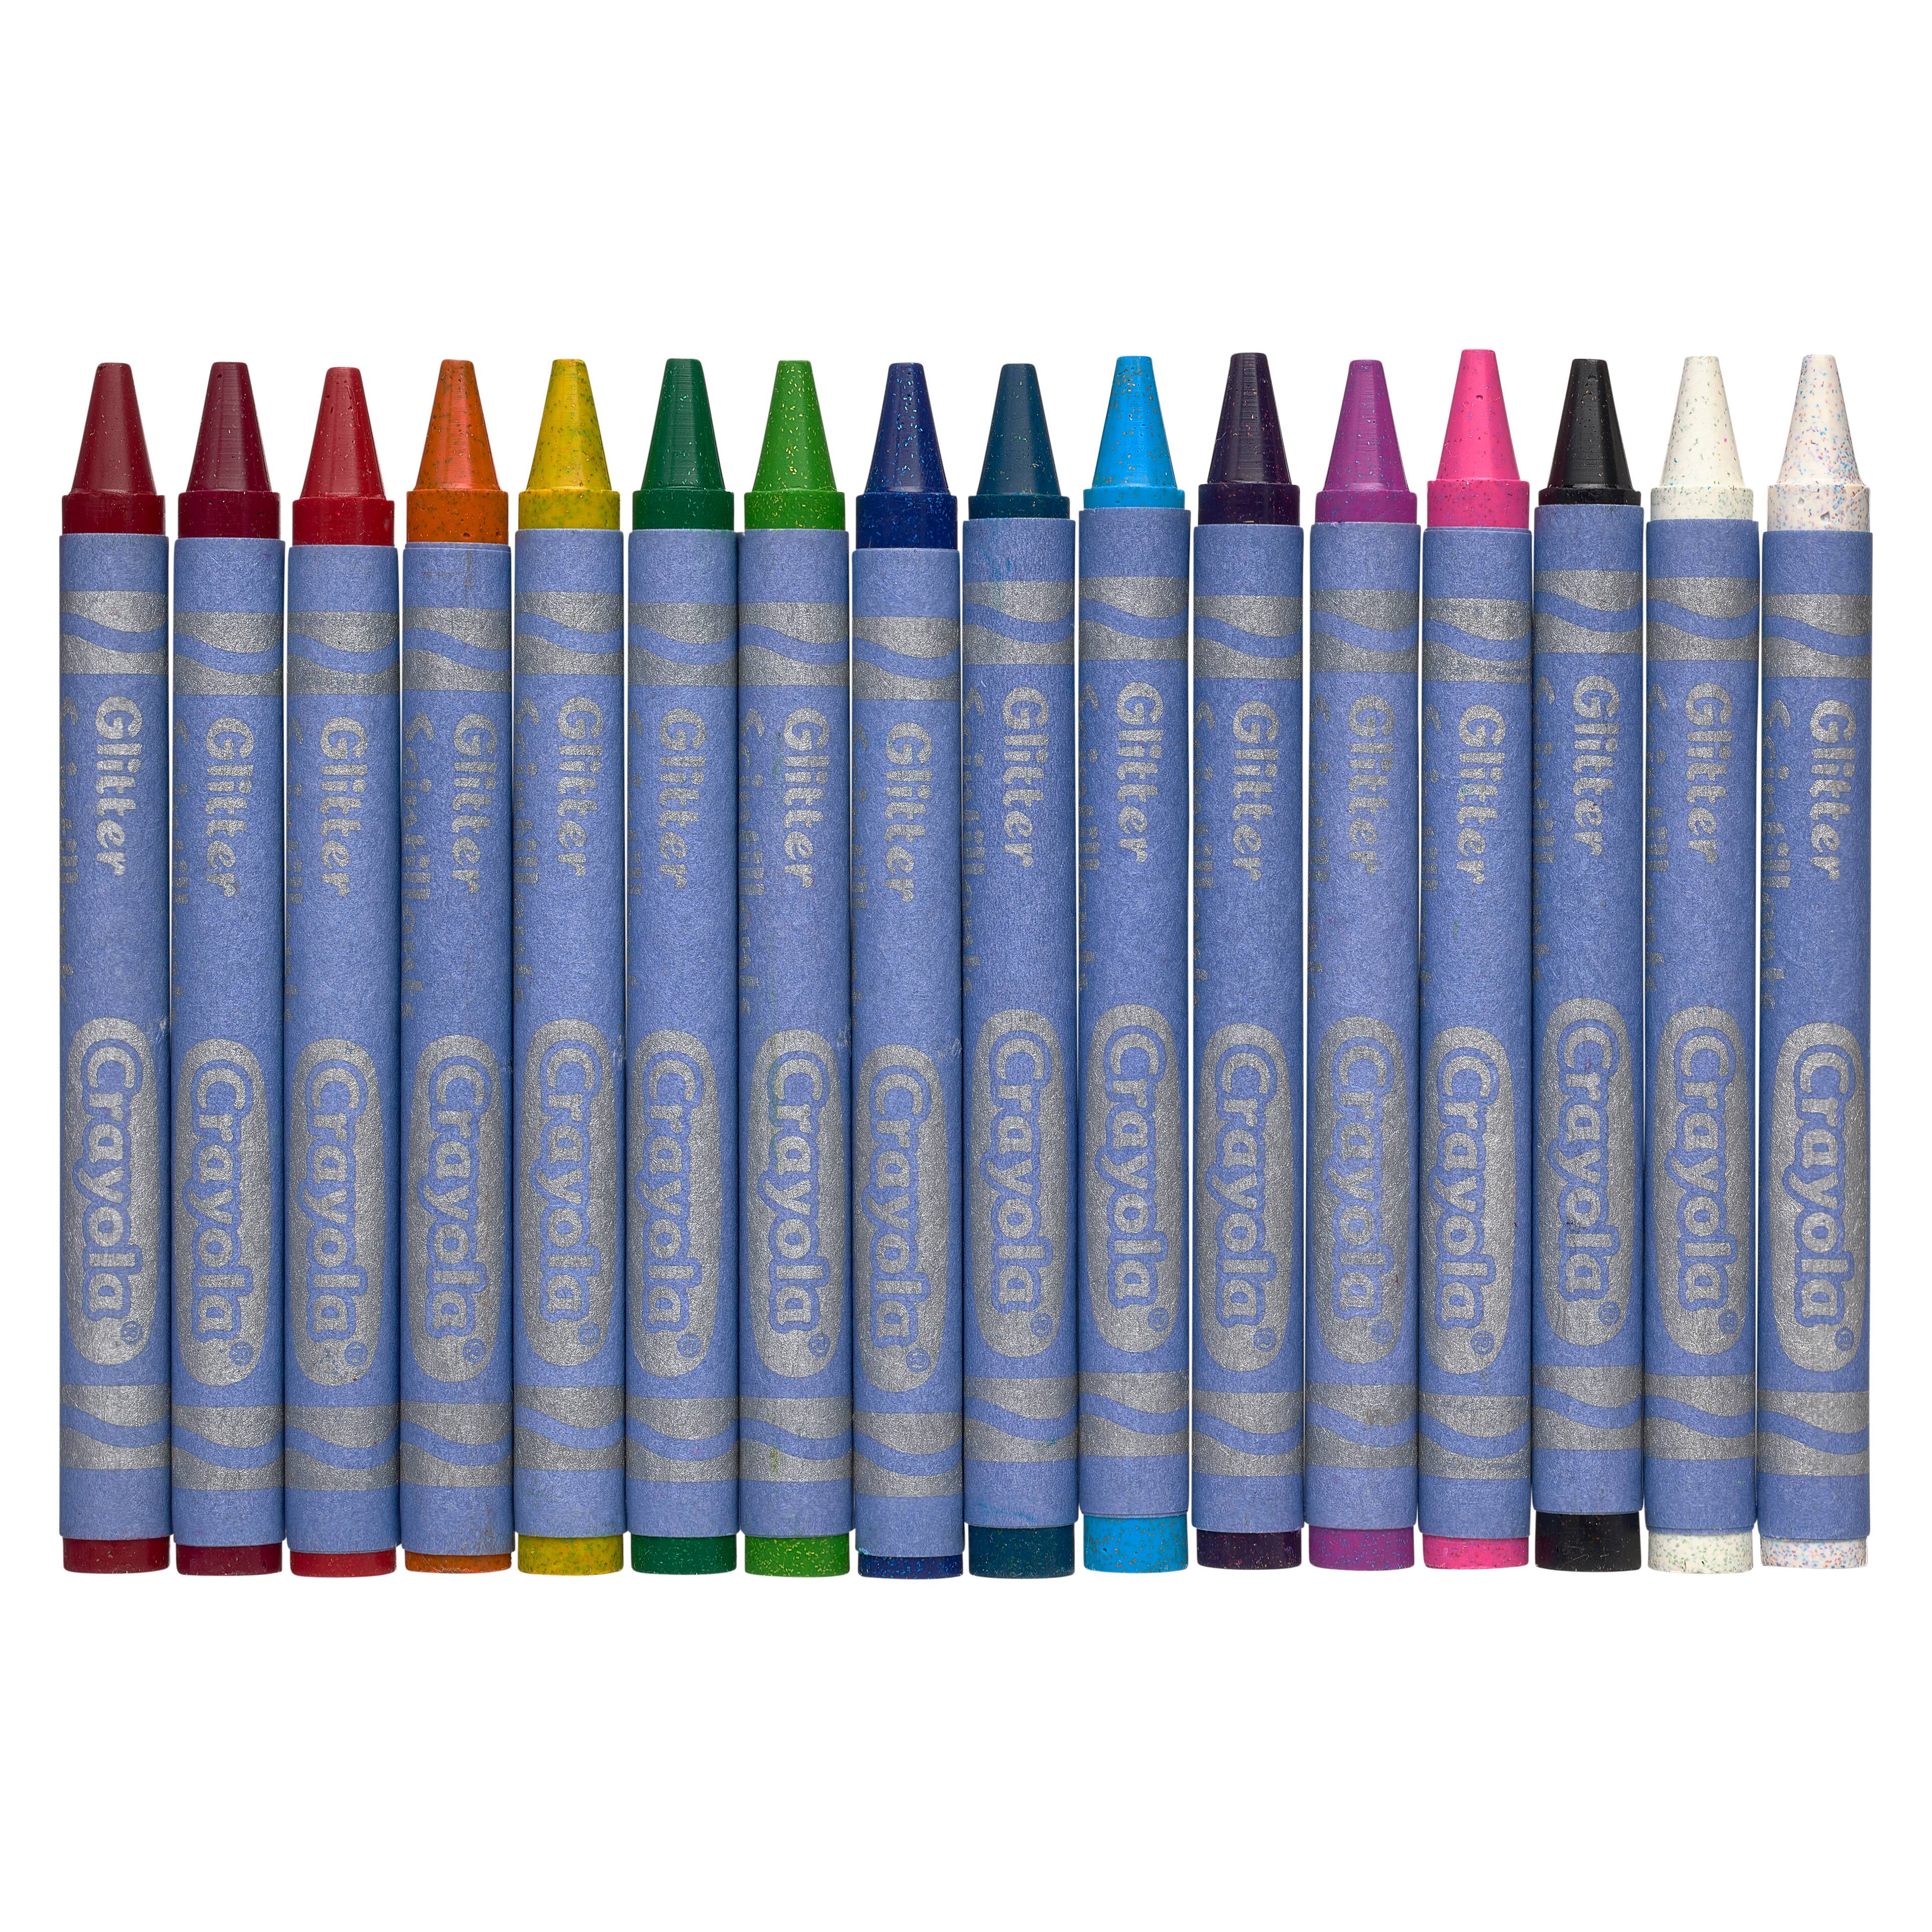 Crayola Washable Kids Paint Set, 10ct.